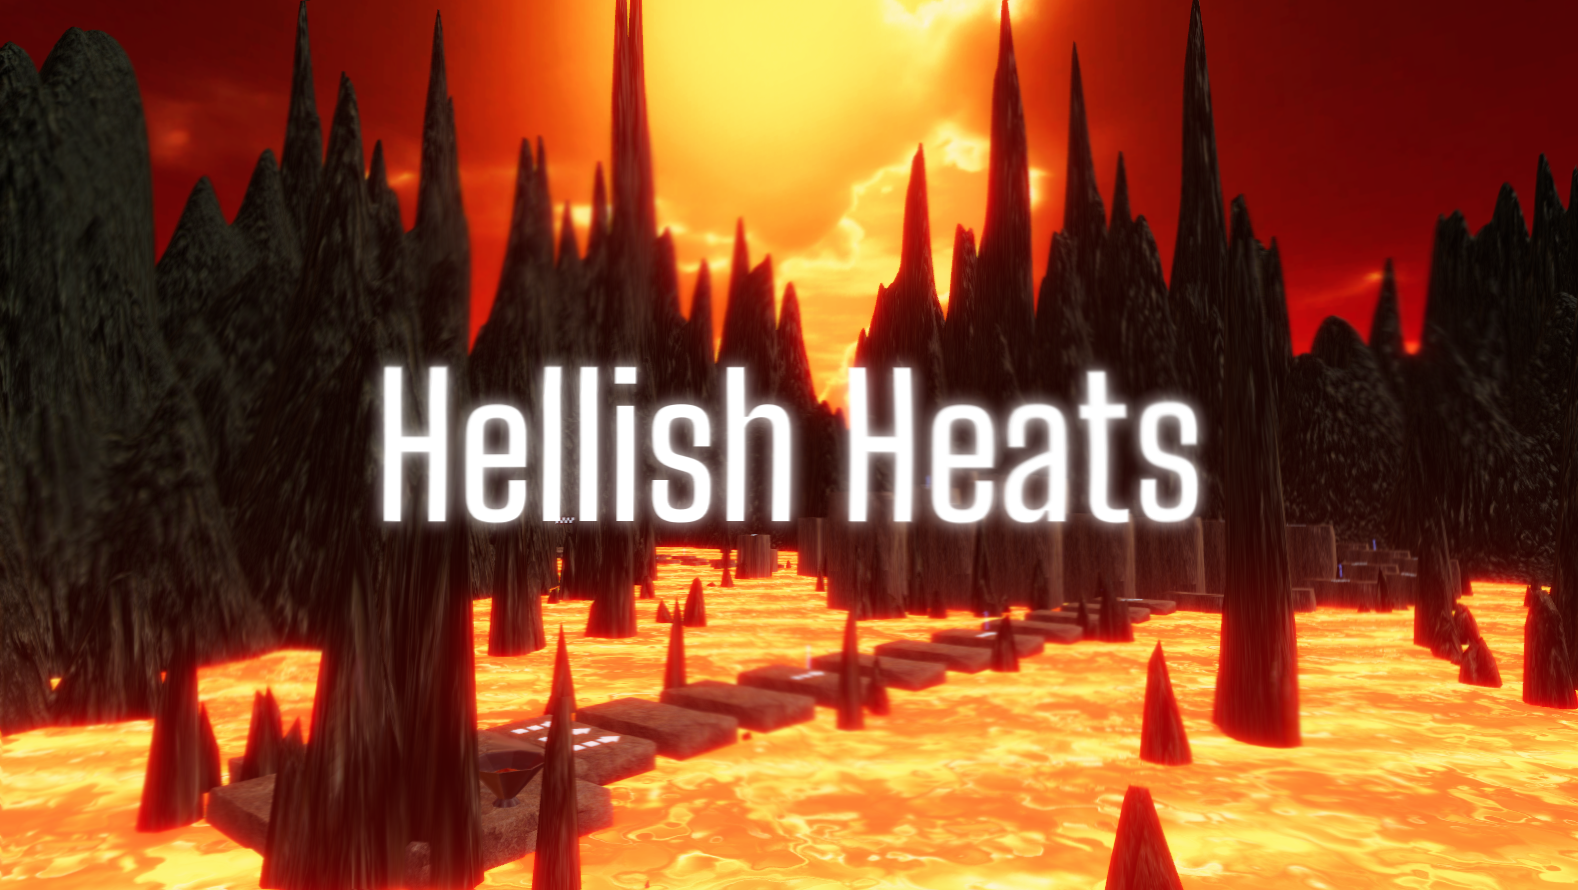 Hellish Heats